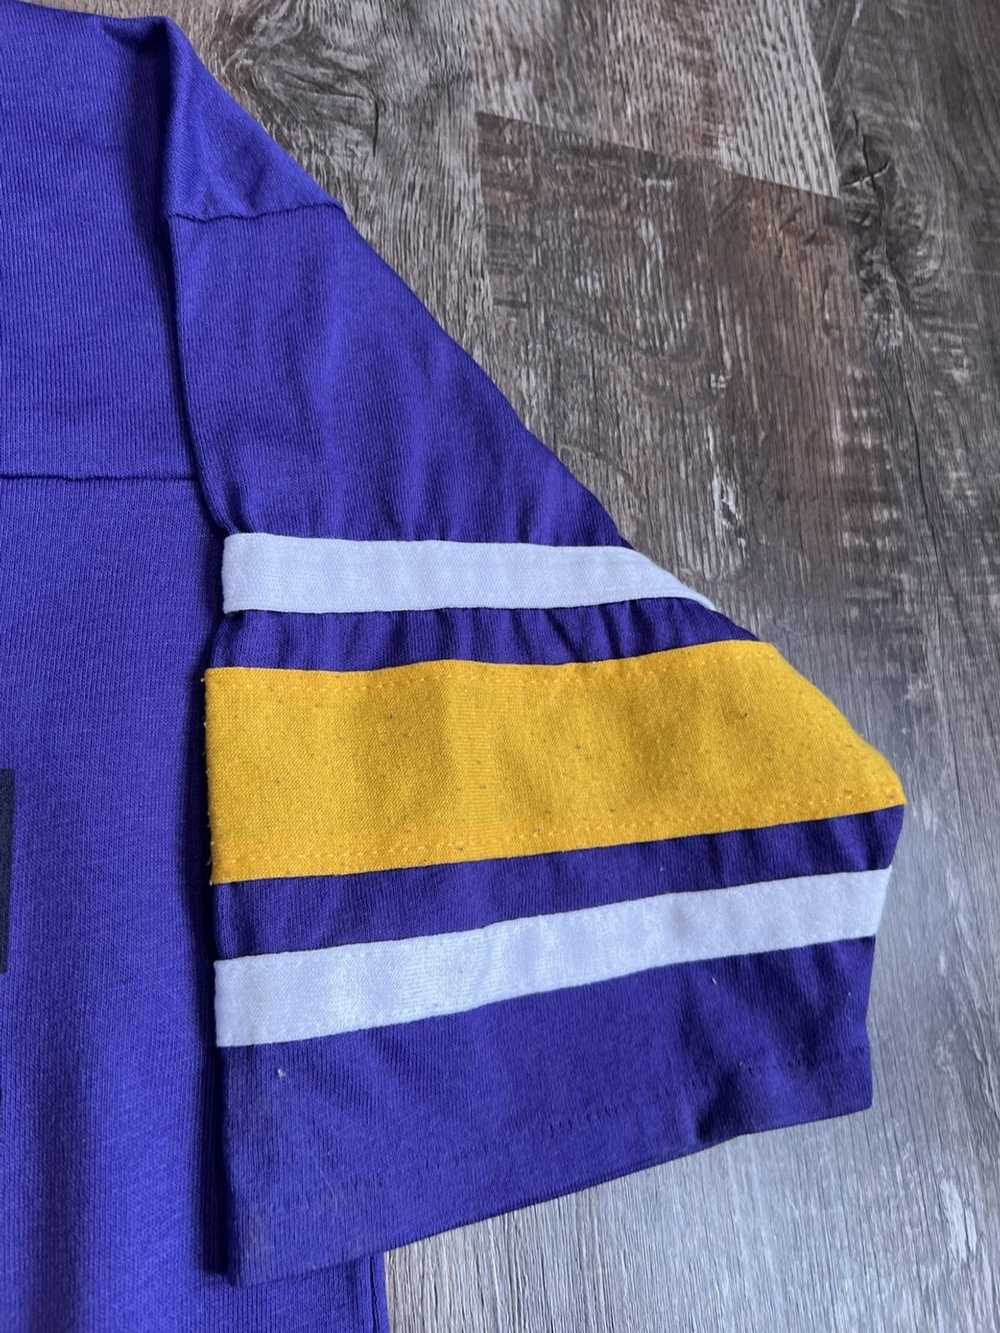 Vintage Vintage Minnesota Vikings Shirt - image 5